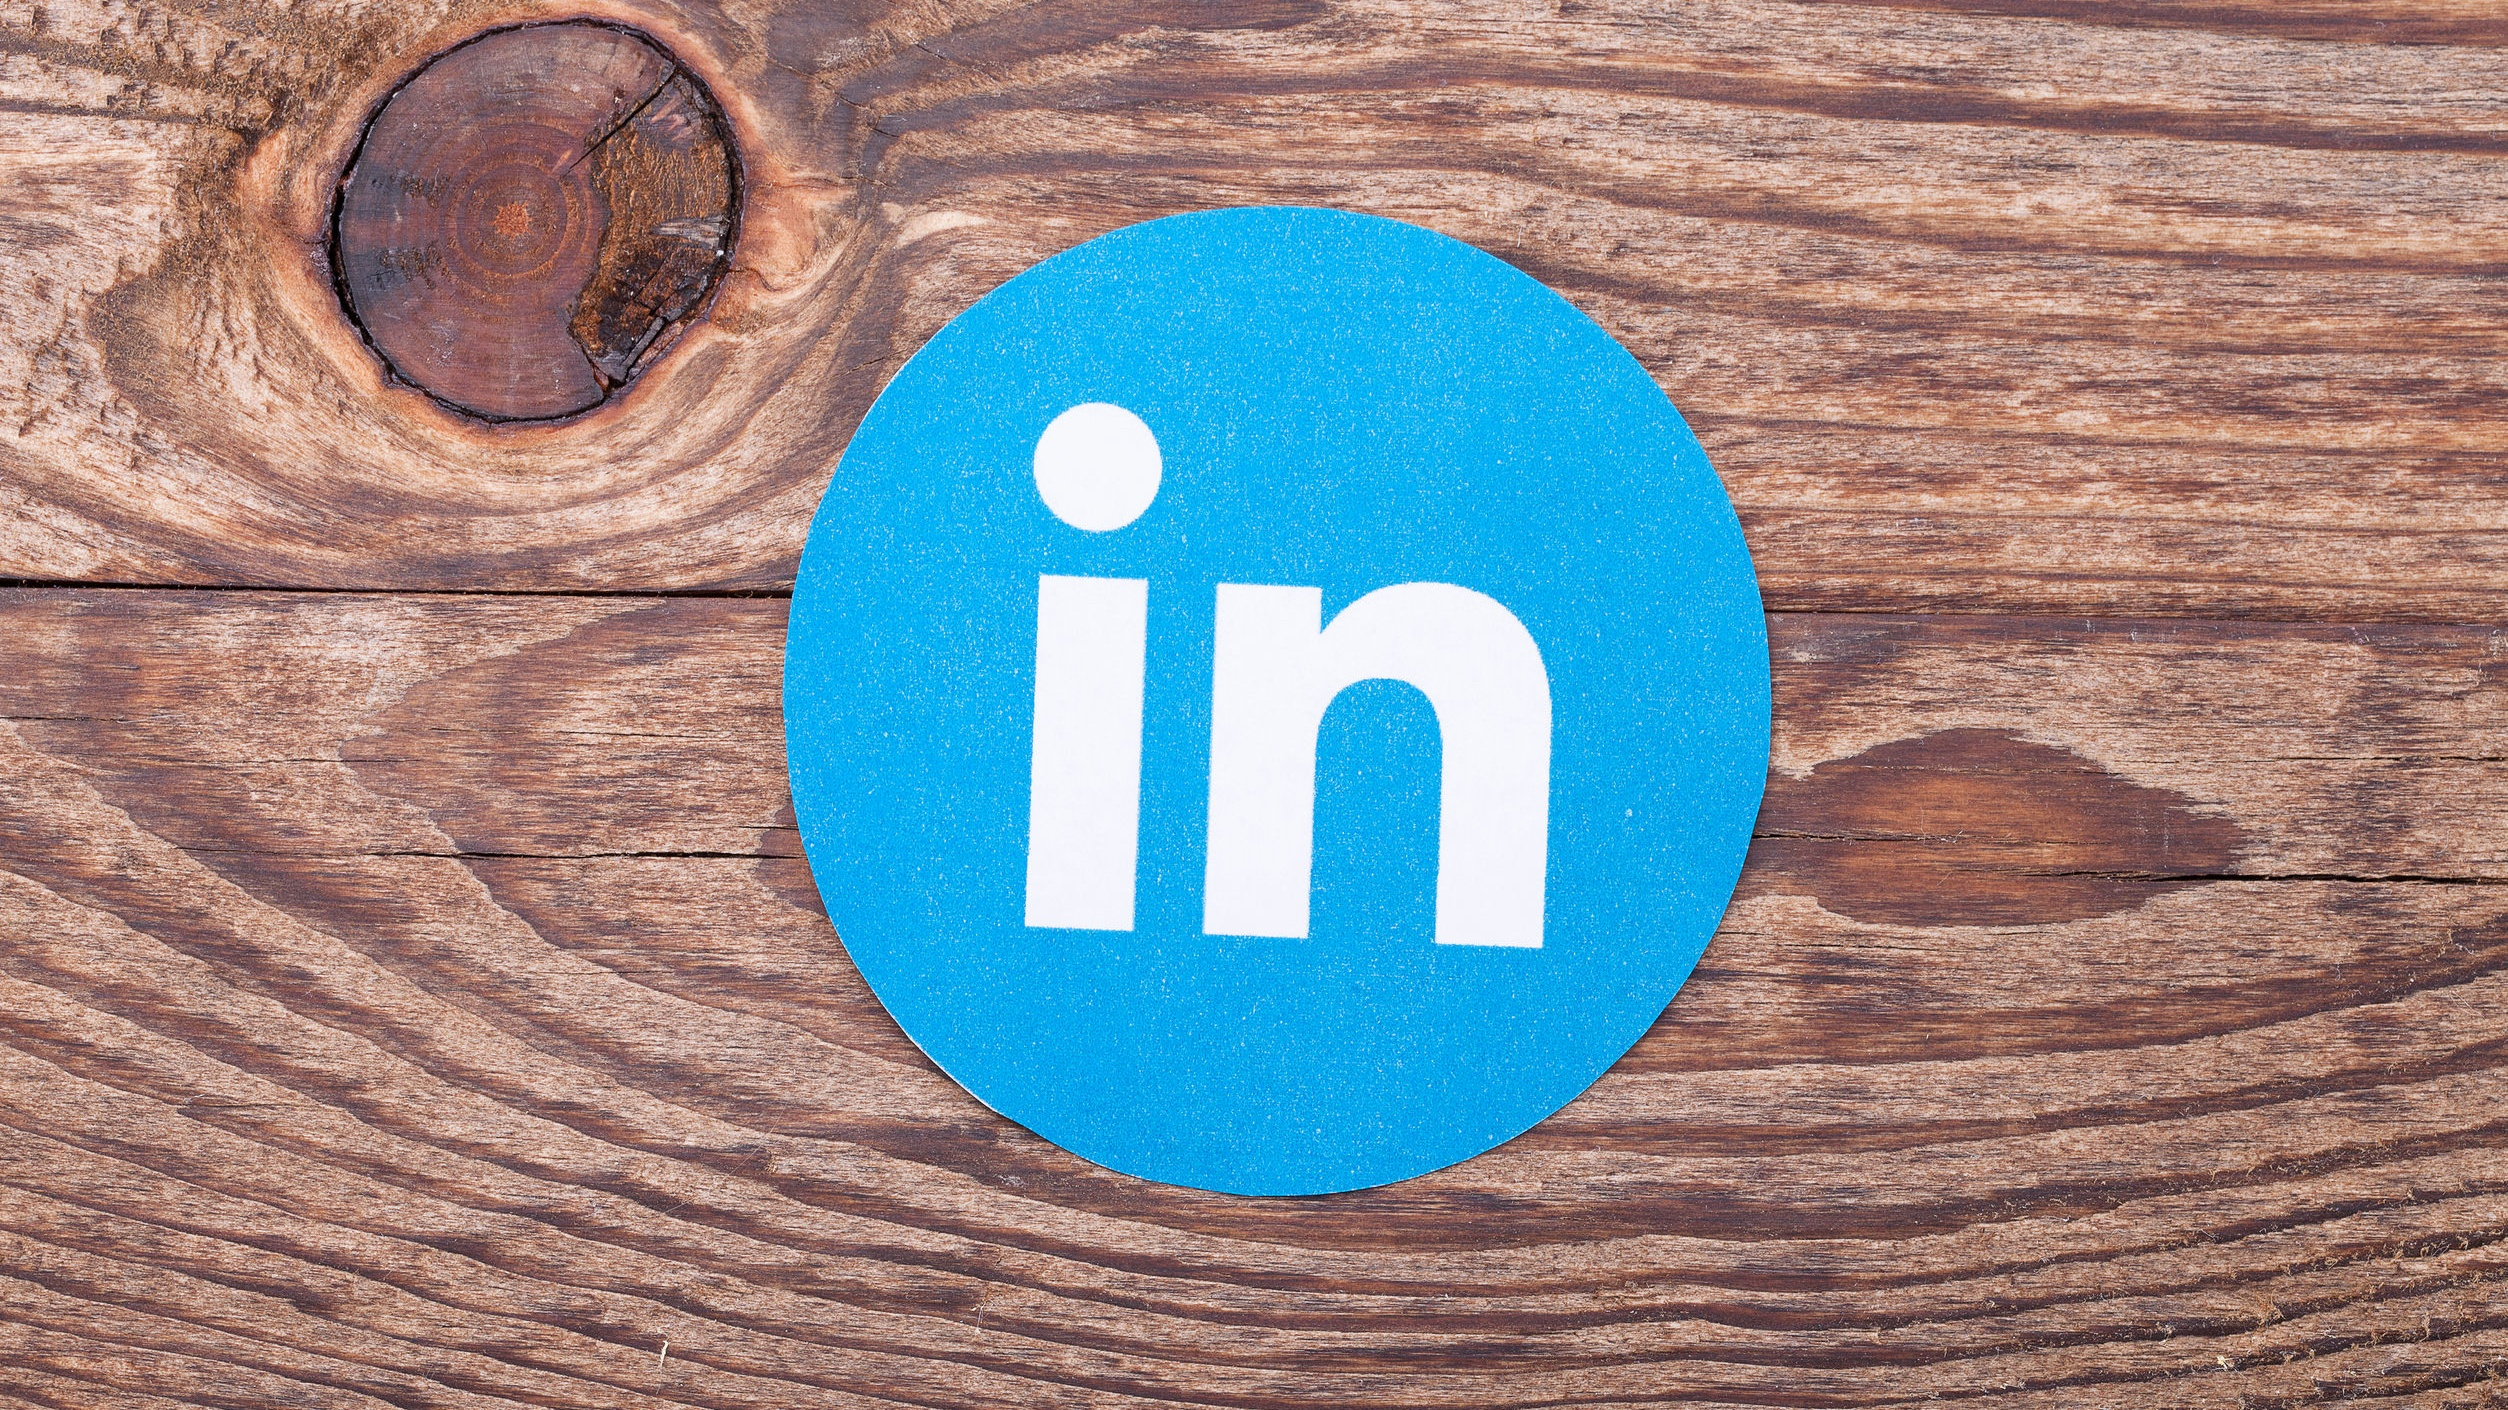 B2b-klant bereiken: adverteren op LinkedIn